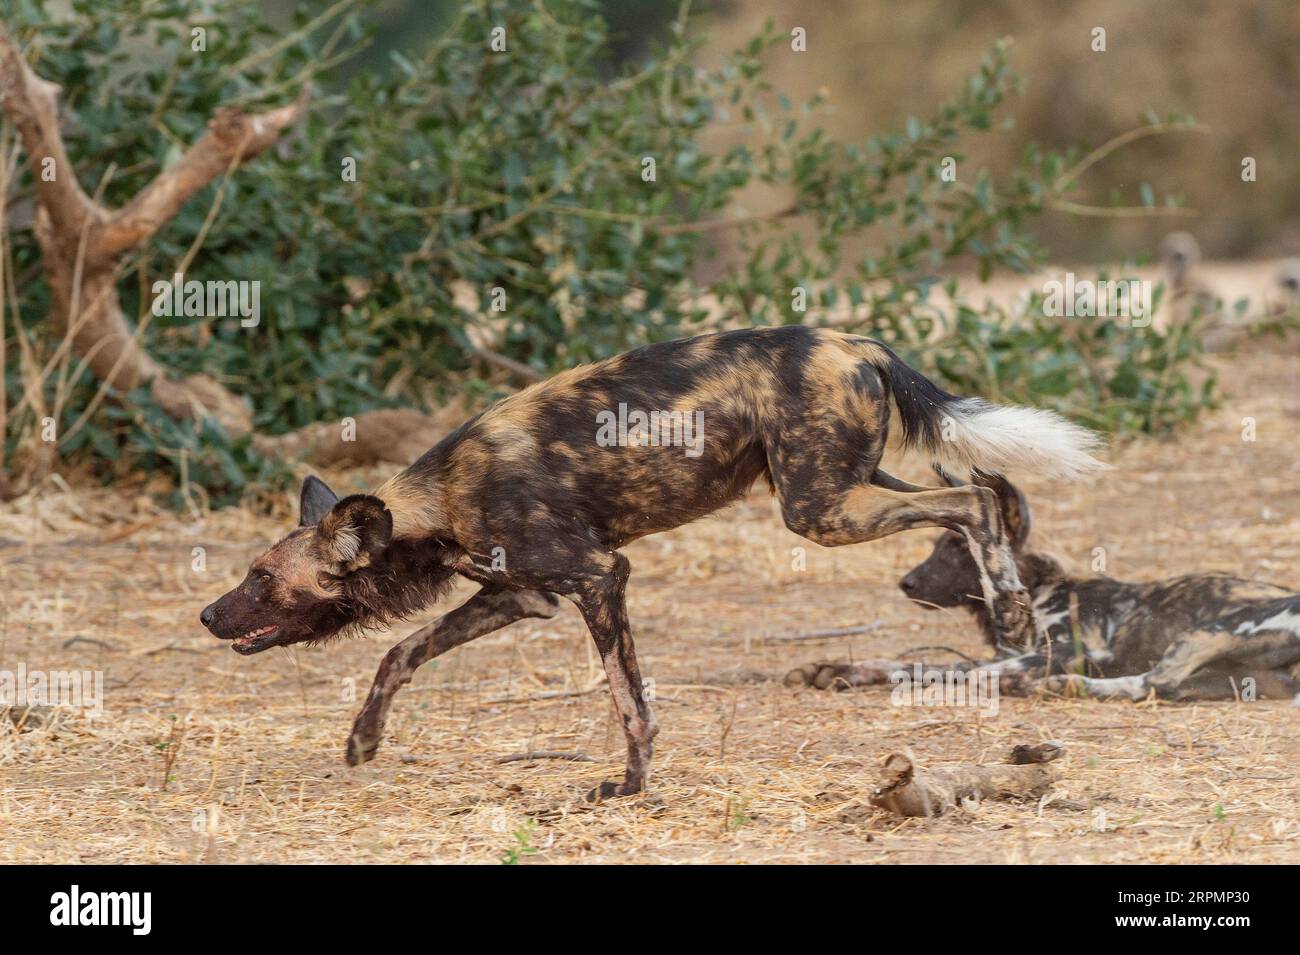 Im Mana Pools National Park in Simbabwe gibt es eine Gruppe gefährdeter afrikanischer Wildhunde, Lycaon Pictus. Stockfoto